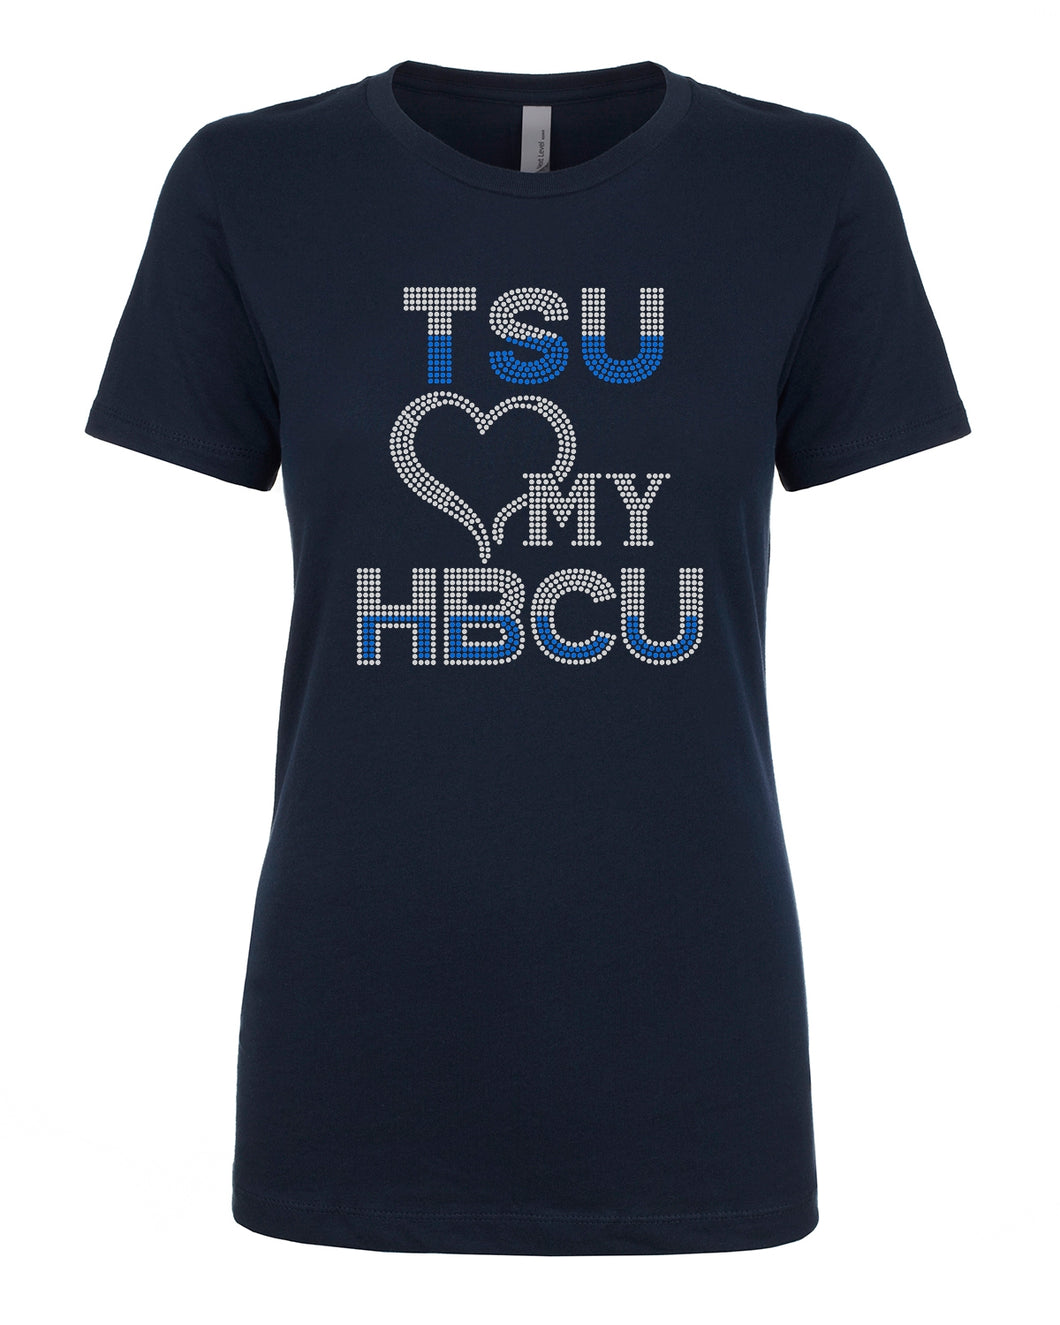 College - Love My HBCU - TSU